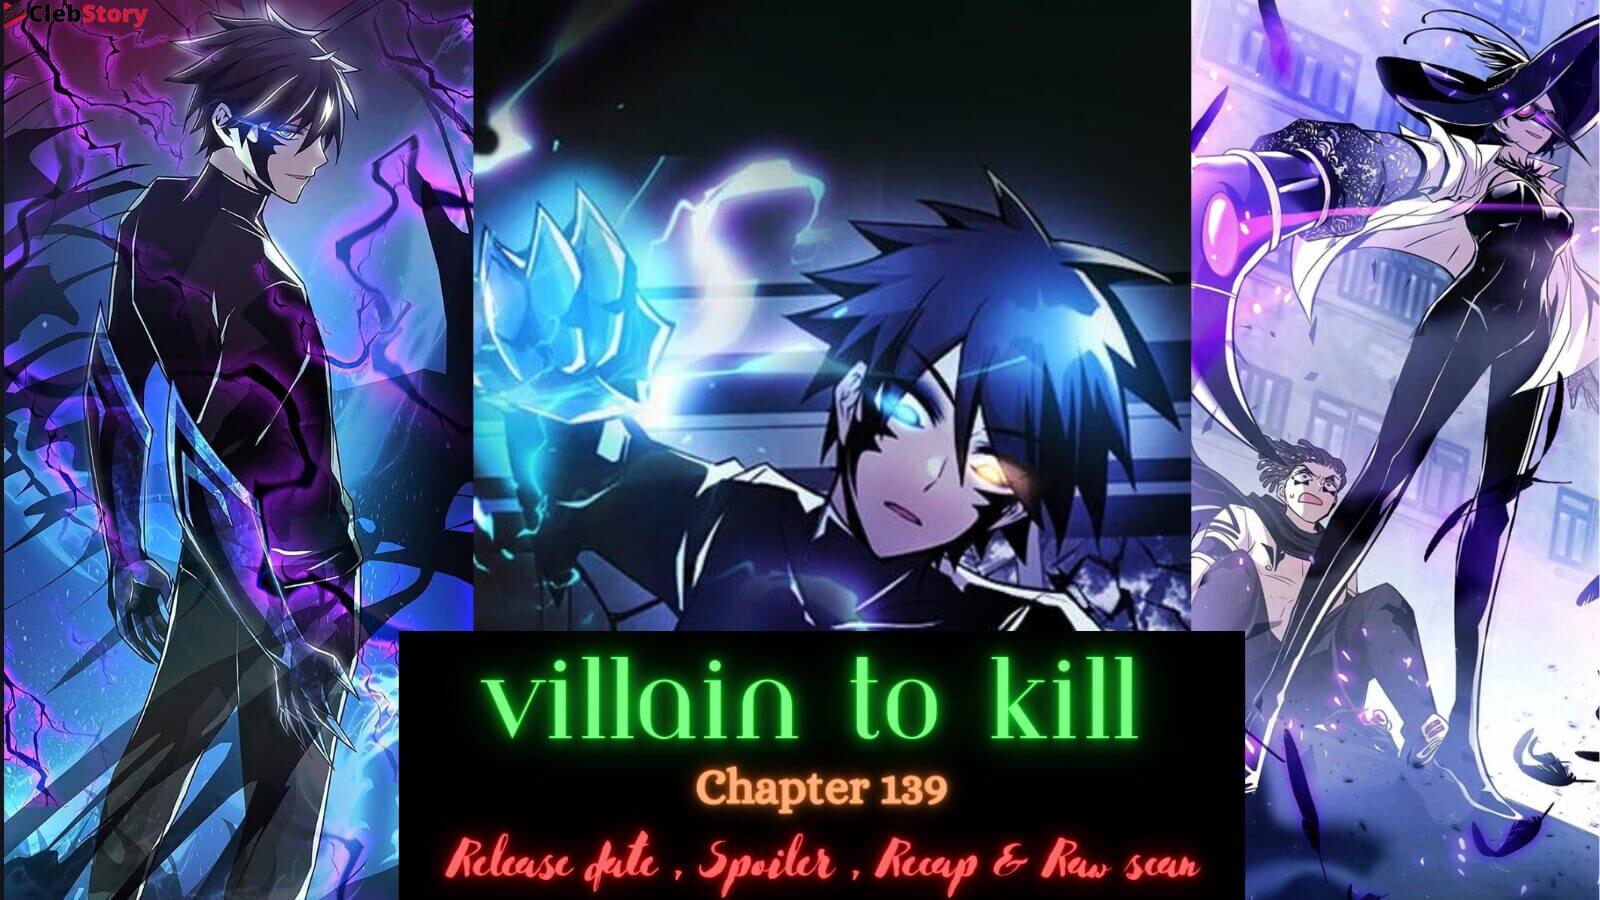 Villain-To-Kill